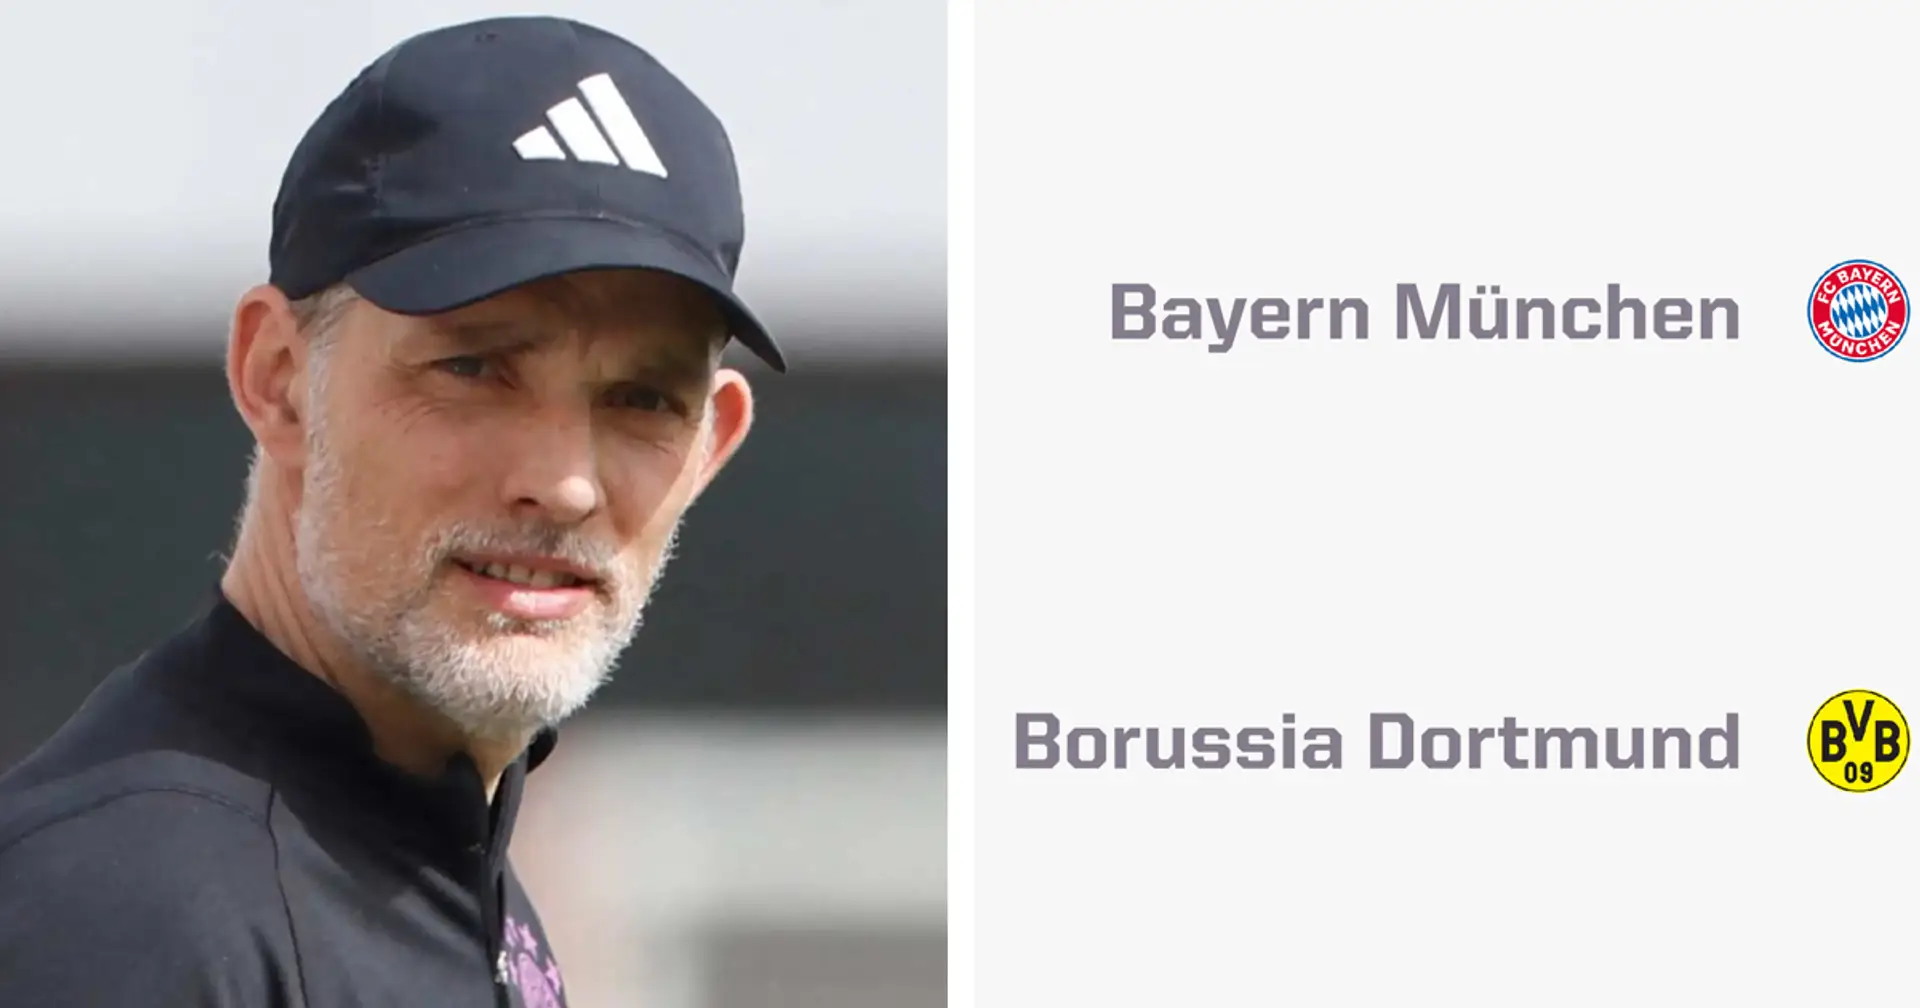 Wie hoch stehen die Chancen des FC Bayern auf den CL-Sieg nach dem Einzug ins Halbfinale? Supercomputer sagt voraus